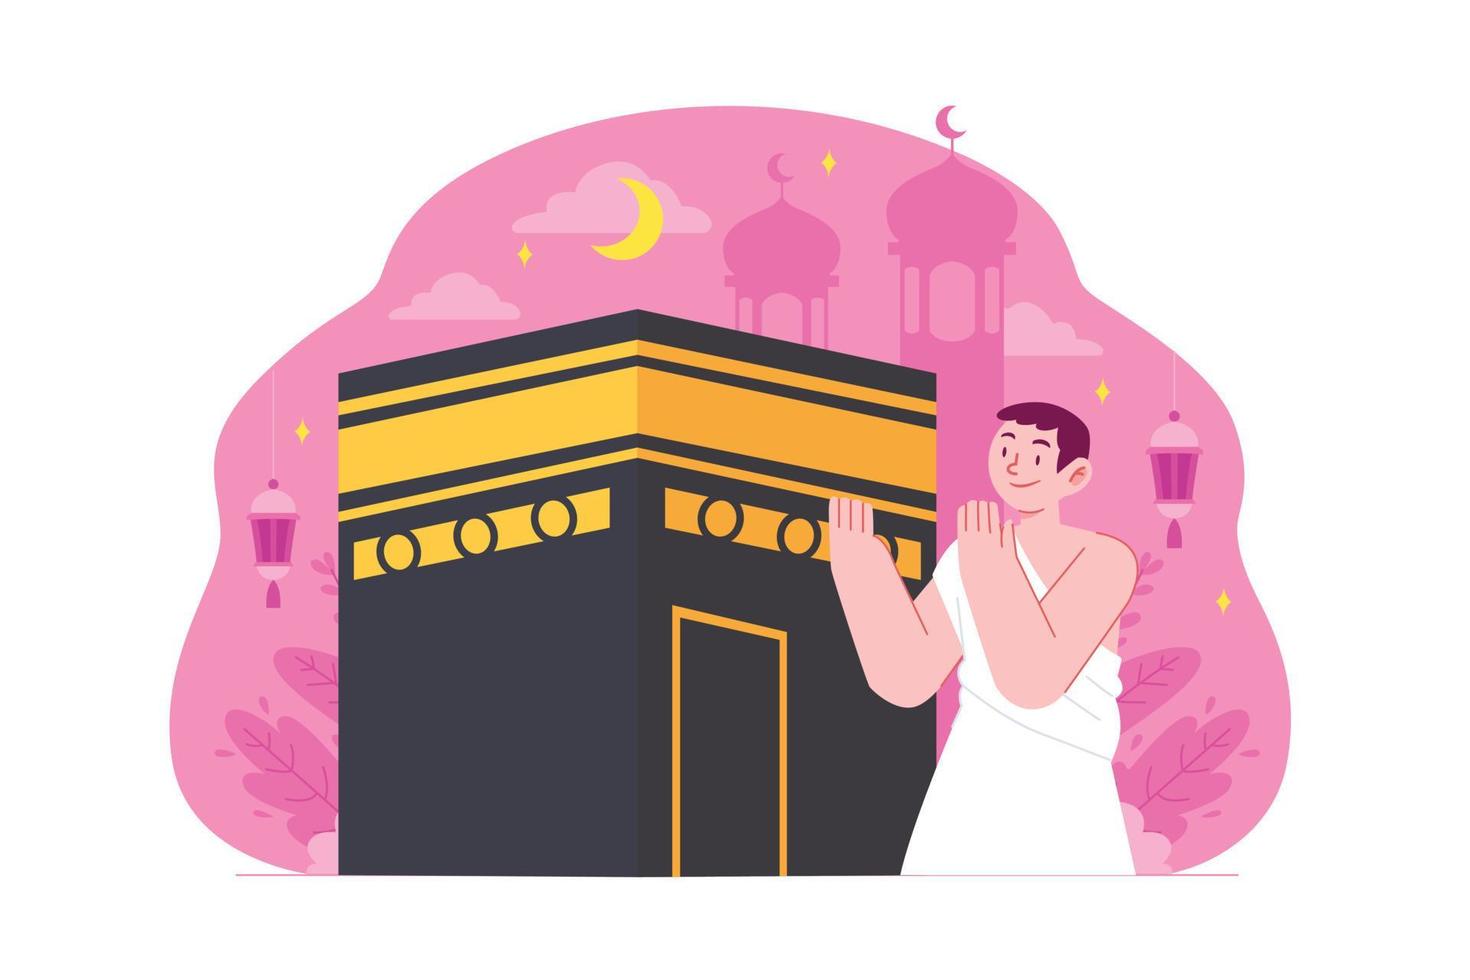 ramadan kareem mubarak concetto illustrazione vettoriale idea per modello di pagina di destinazione, famiglia islamica, persone che pregano insieme nella moschea, celebrando il mese santo a kabah, iftar, stile piatto disegnato a mano